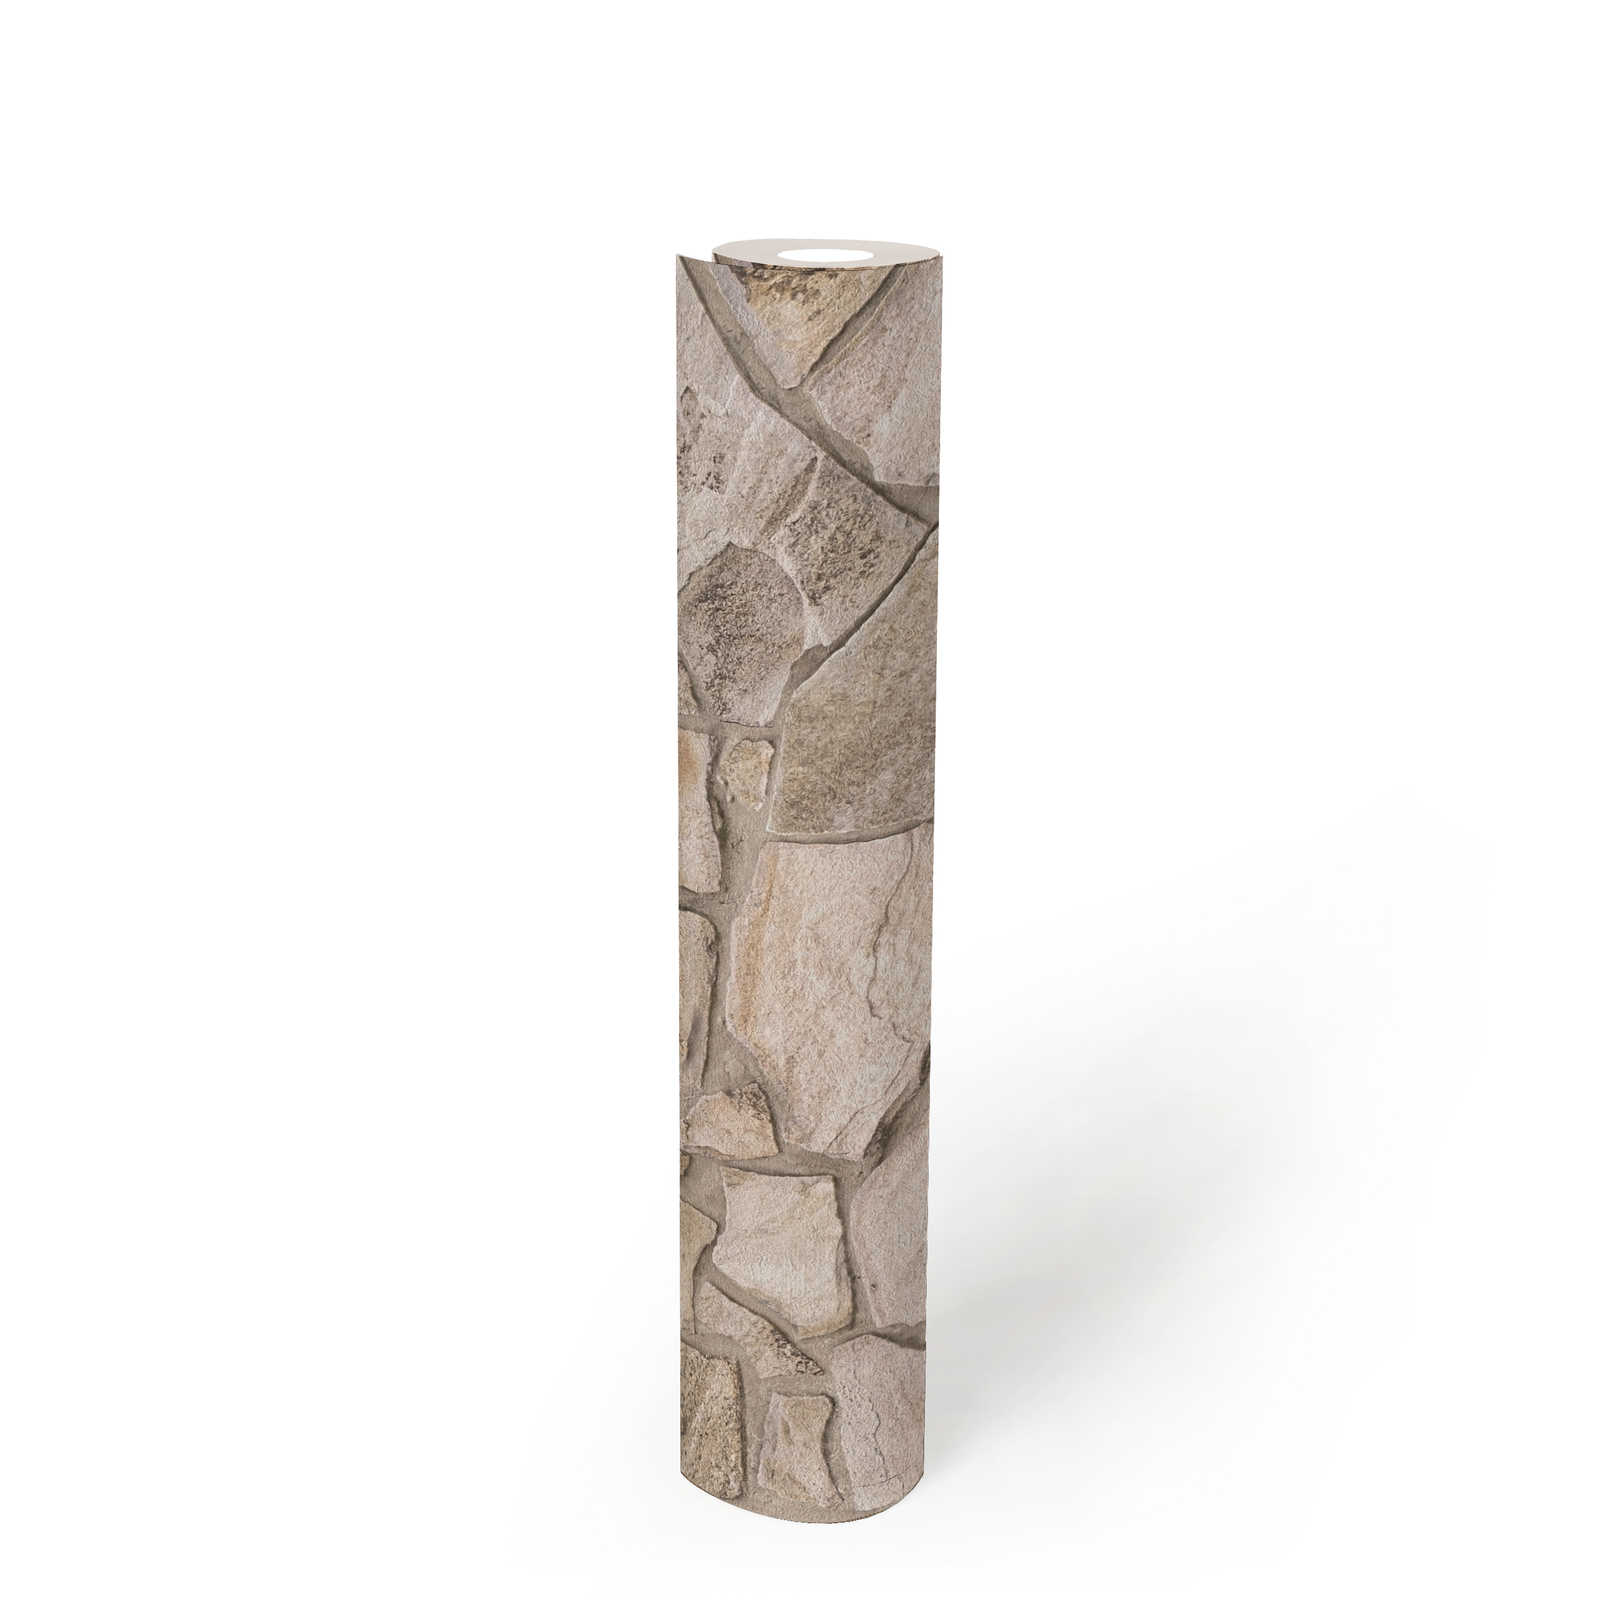             Vliestapete in Steinoptik mit 3D-Mauerwerk – Beige, Grau, Braun
        